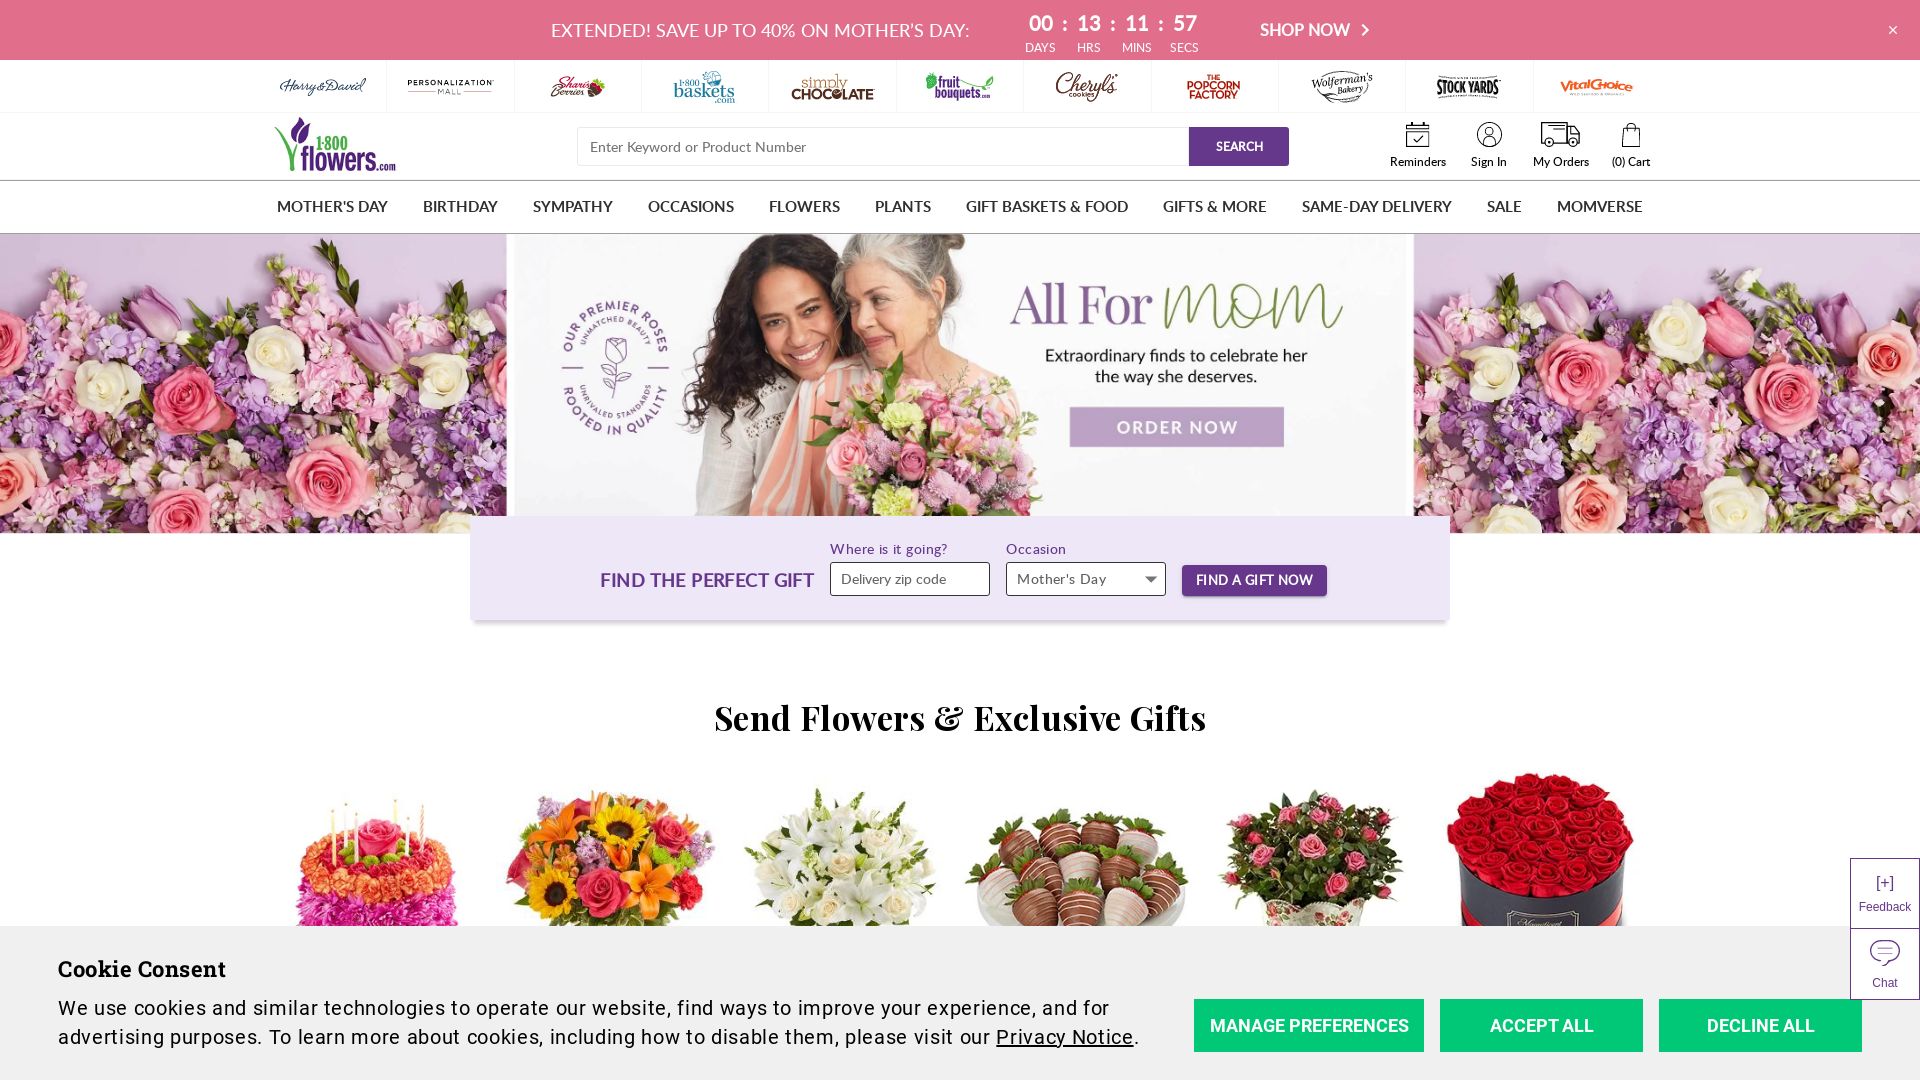 Stato del sito web 1800flowers.com è   ONLINE